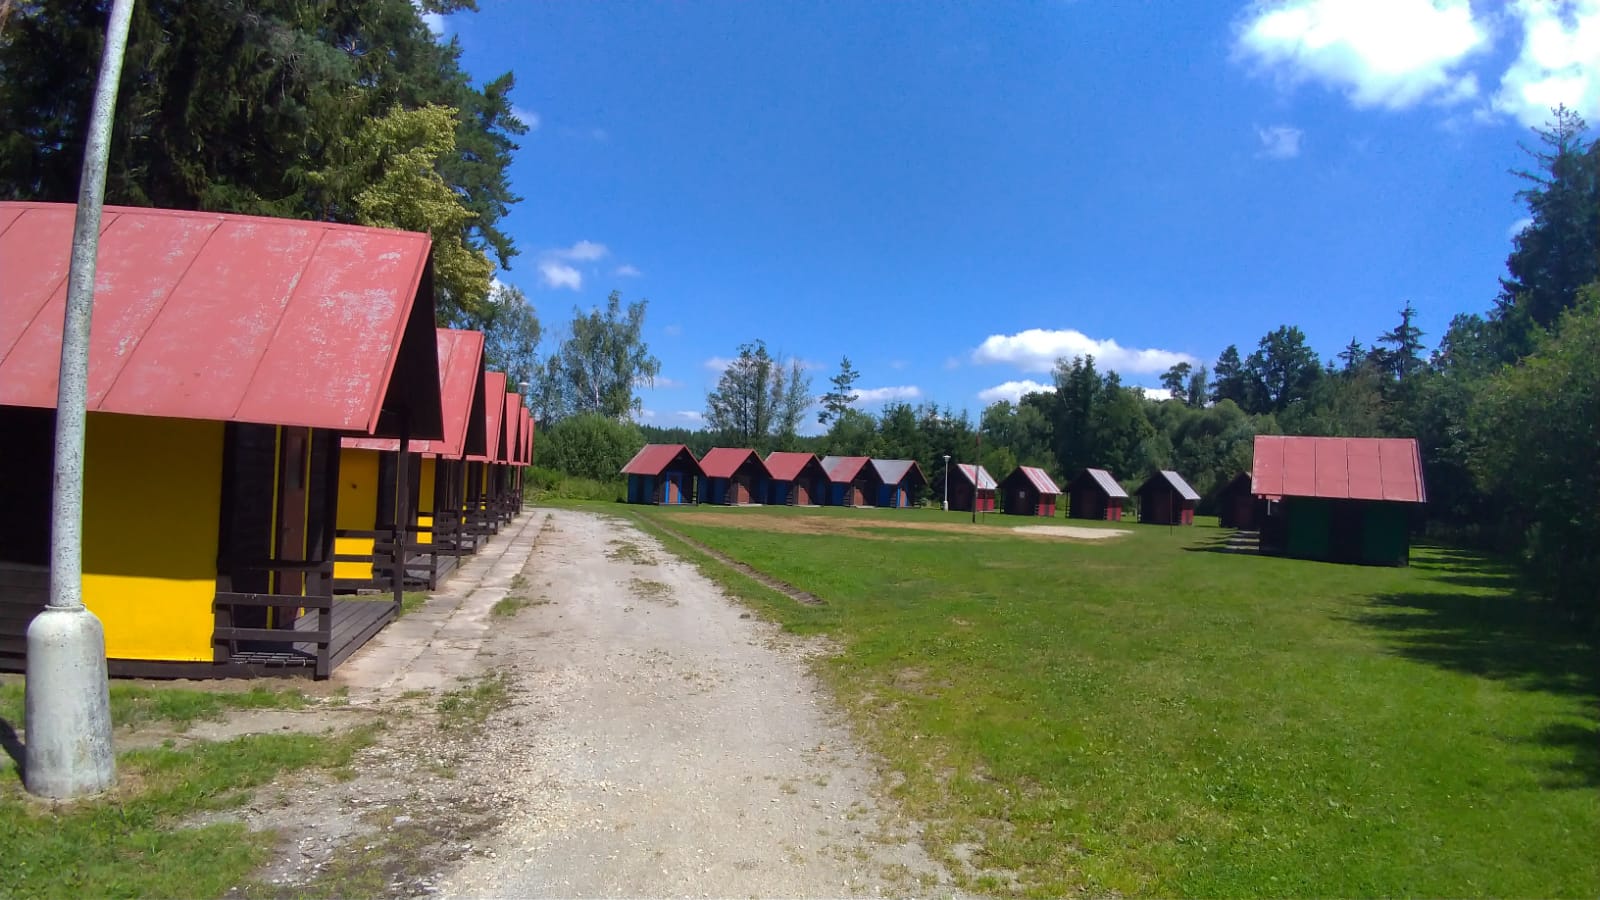 Chatičkový tábor Buková